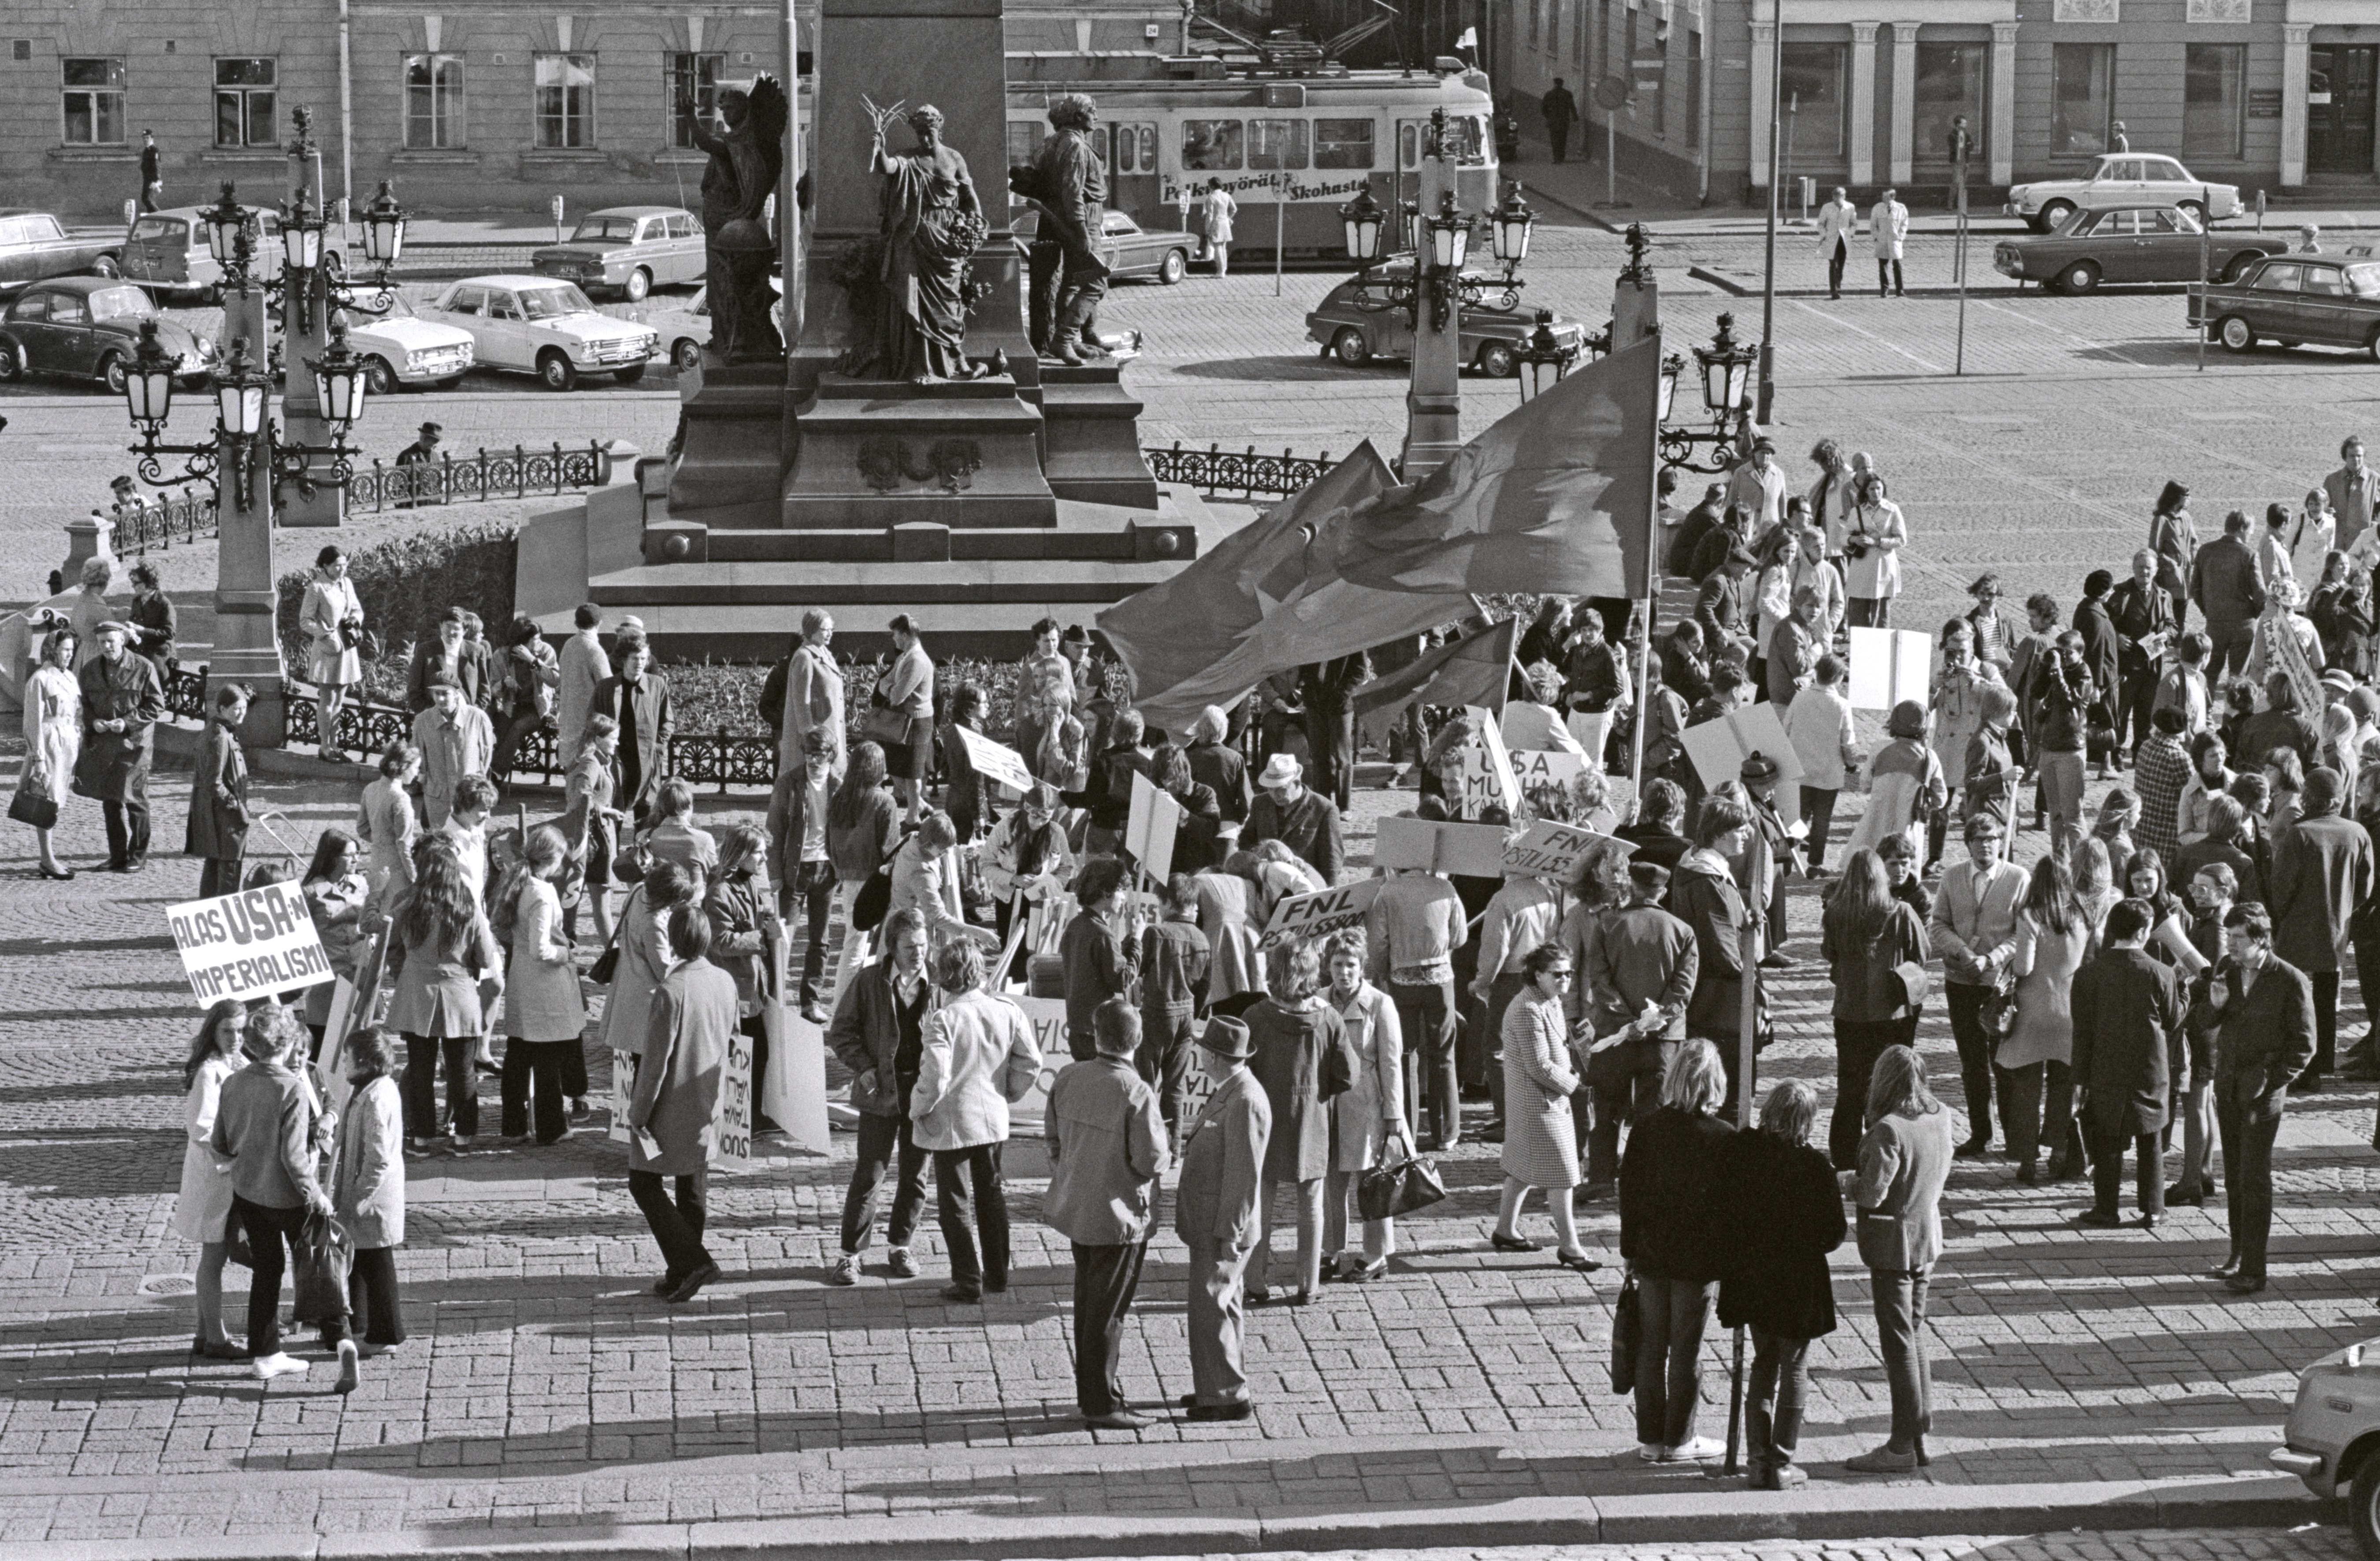 Hallituskatu 7. Ihmisiä kokoontumassa Vietnamin sodan vastaisen mielenosoituskulkueen lähtöpaikalle Senaatintorille Aleksanteri II:n patsaan ympärille.